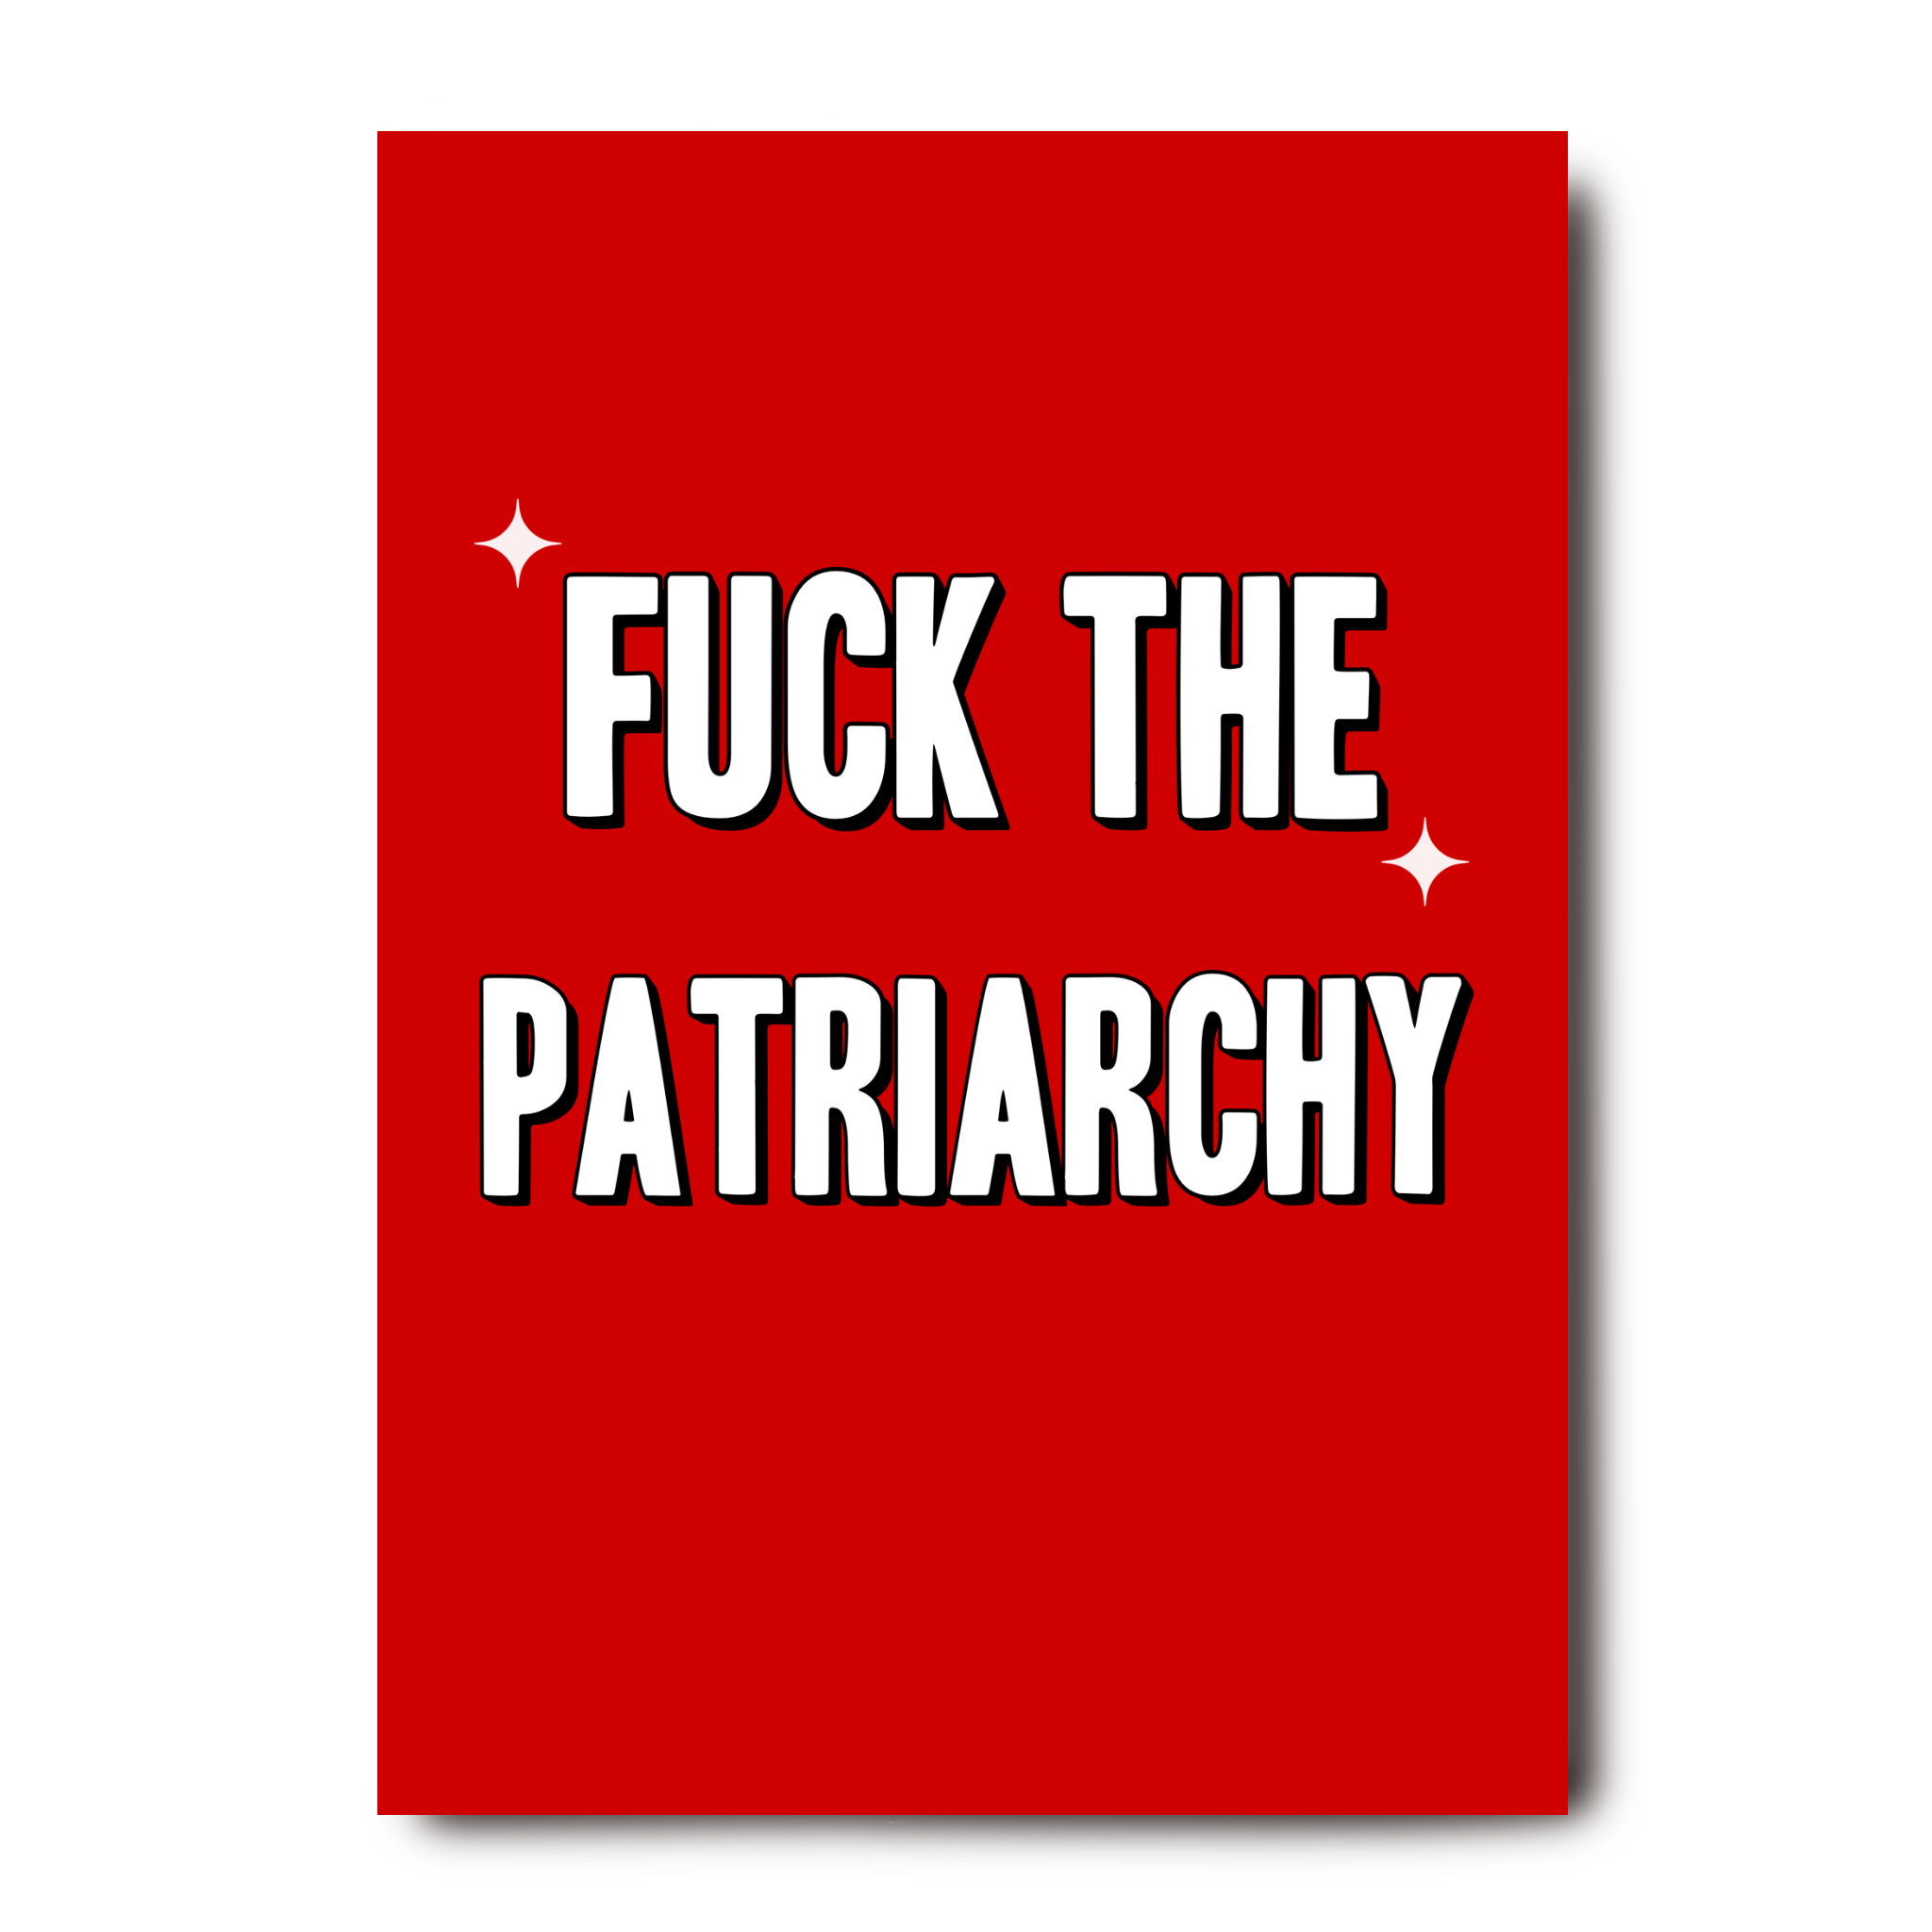 J'emmerde le patriarcat